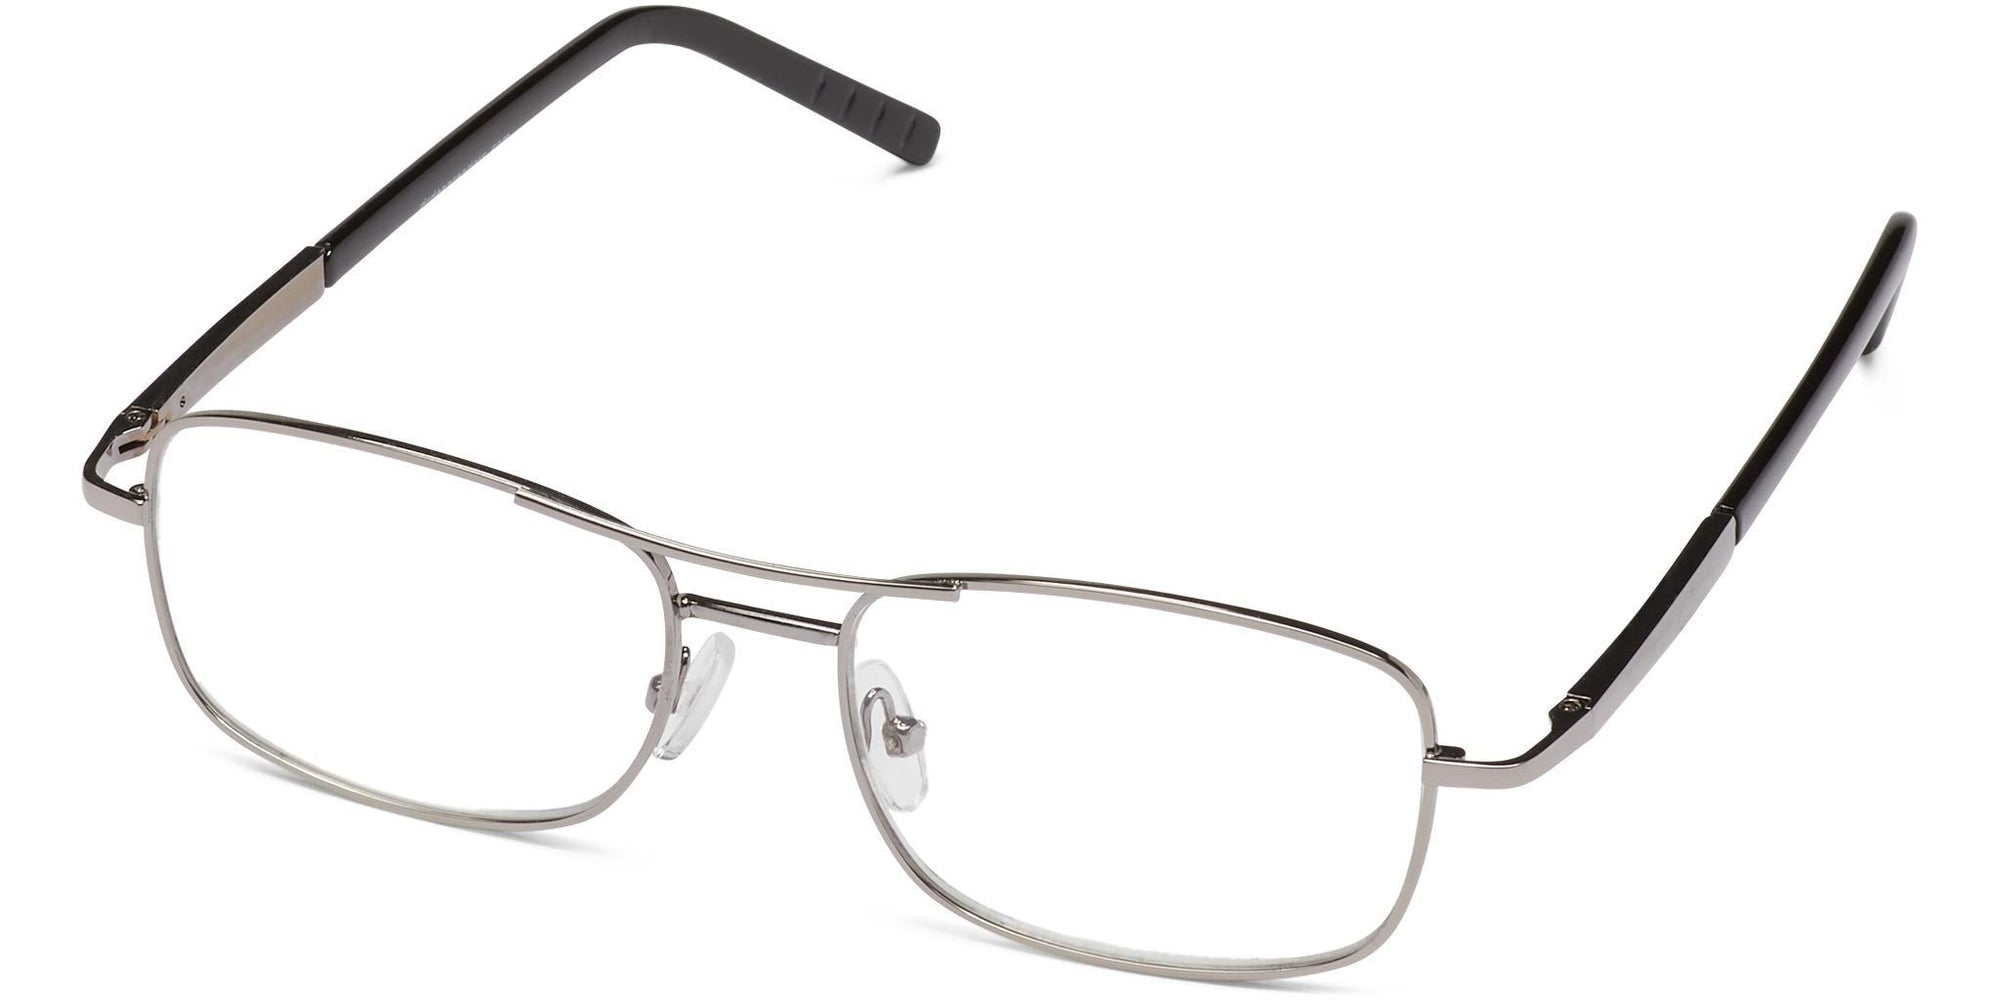 Vernon - Silver / 1.25 - Reading Glasses